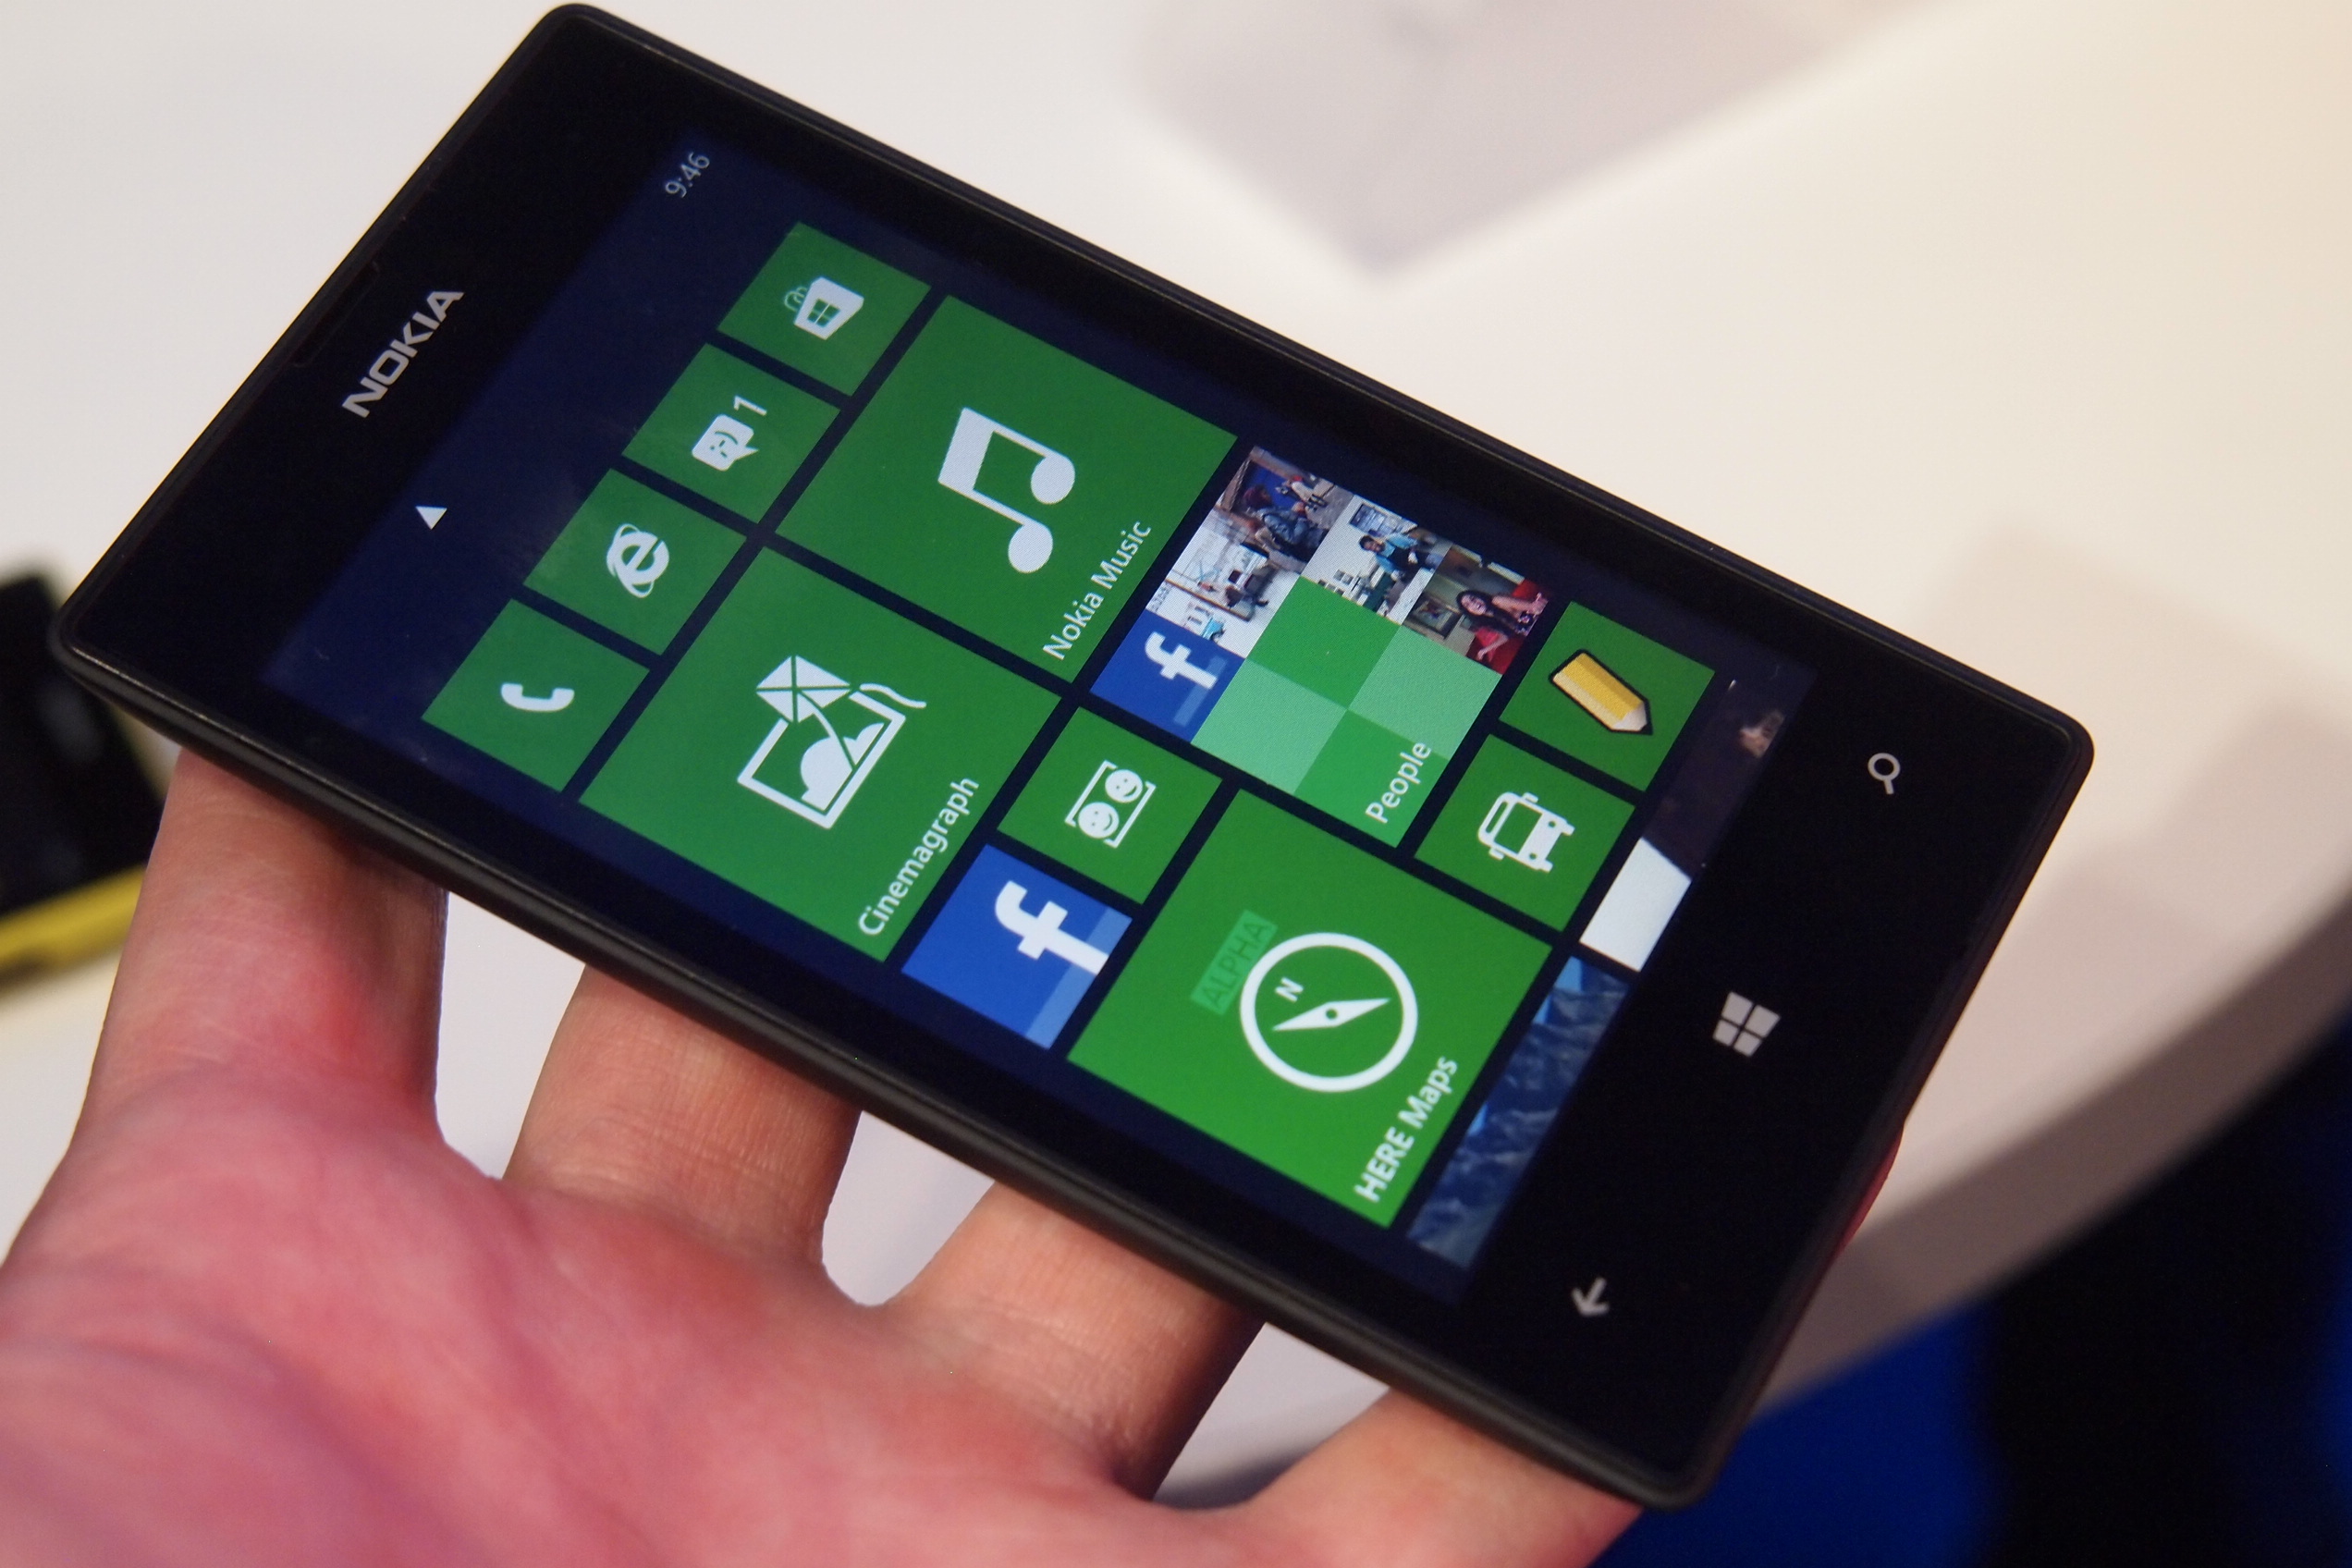 Nokia-Lumia-520-620-offerte-sconti-migliori-Amazon-Euronics